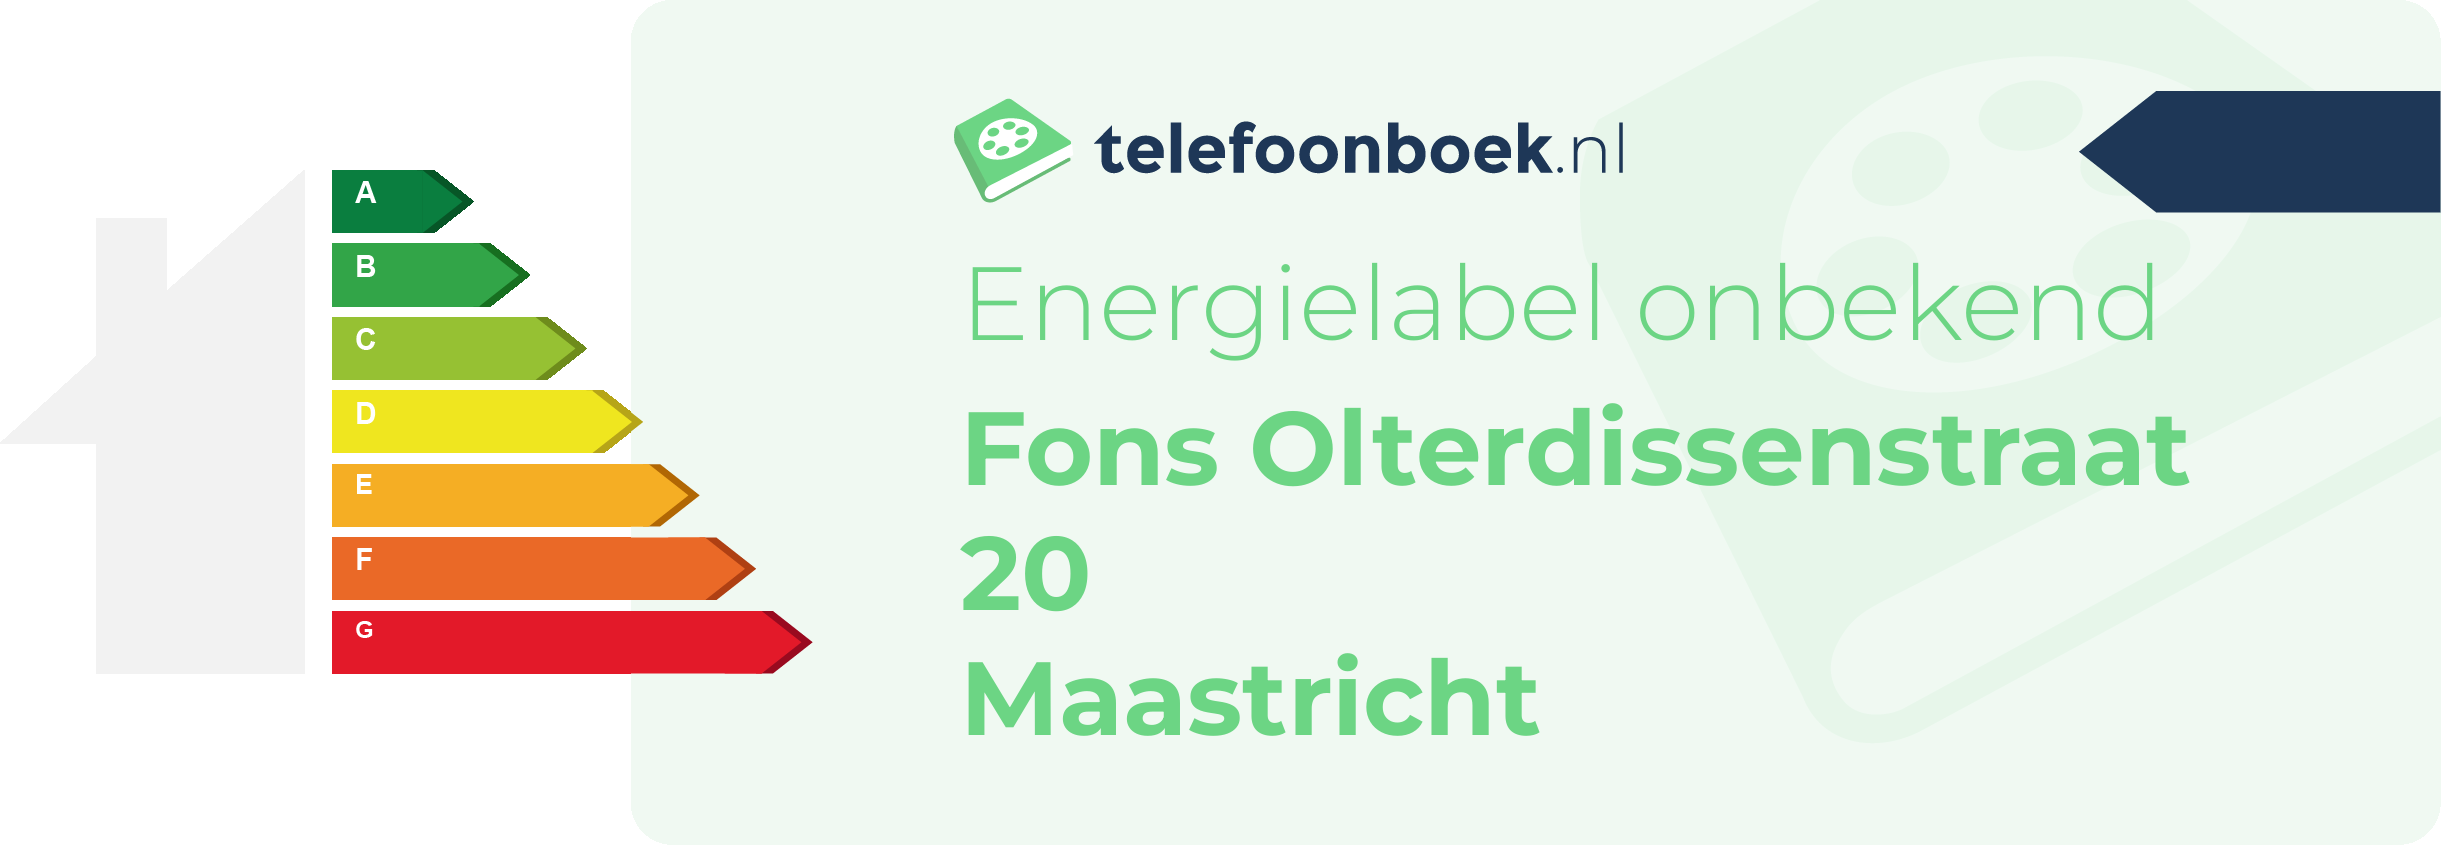 Energielabel Fons Olterdissenstraat 20 Maastricht